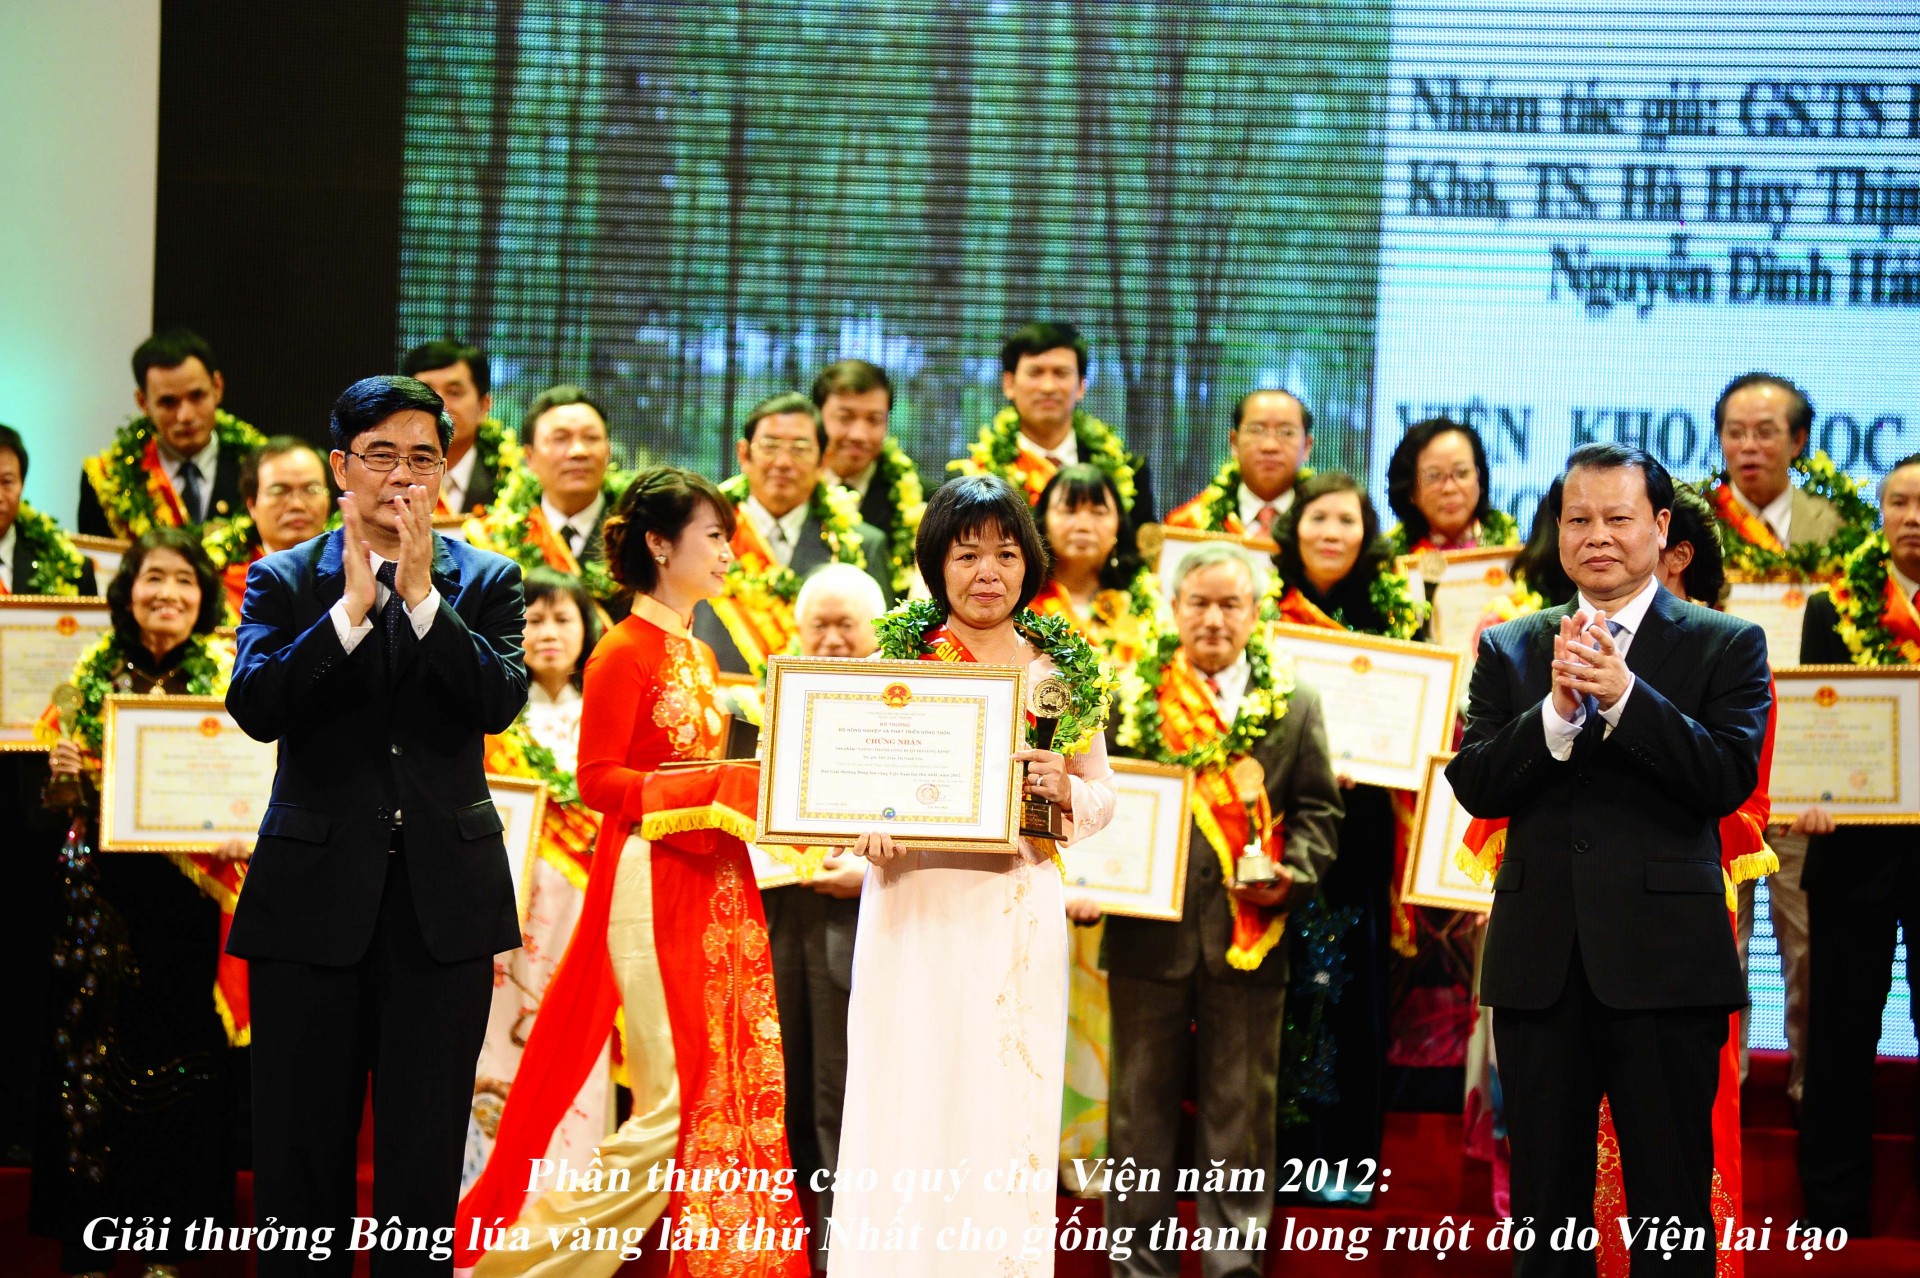 Giống Thanh long ruột đỏ Long Định được tặng giải thưởng Bông lúa vàng lần thứ Nhất - 2012